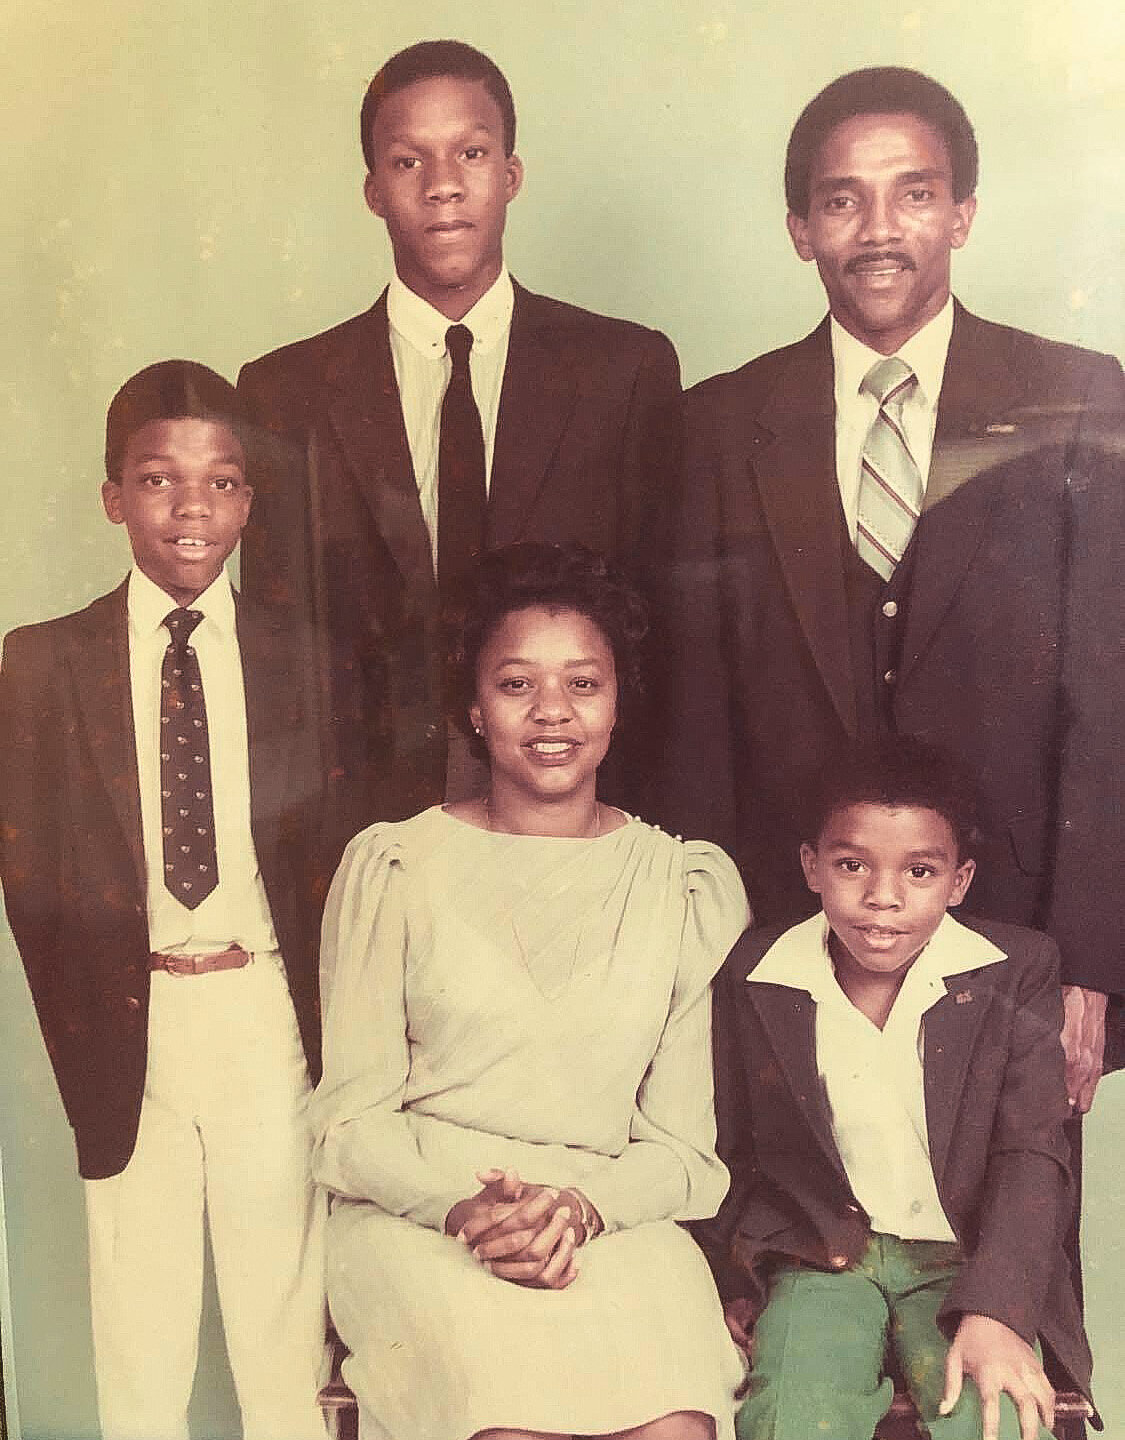 Retrato da família Boseman com Chadwick sentado à direita